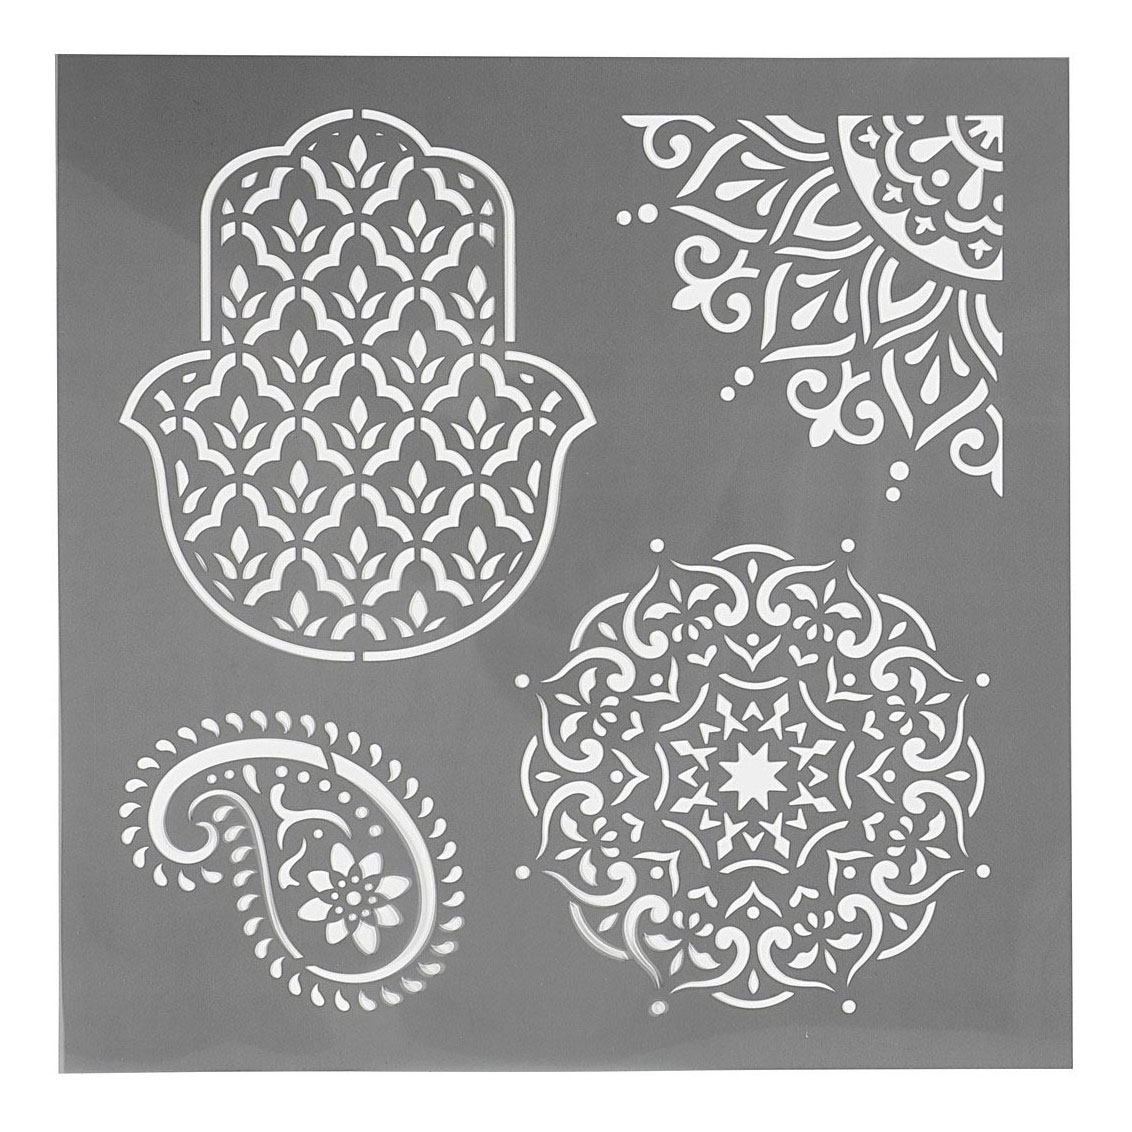 Gabarit motifs ethniques, 30,5x30,5cm